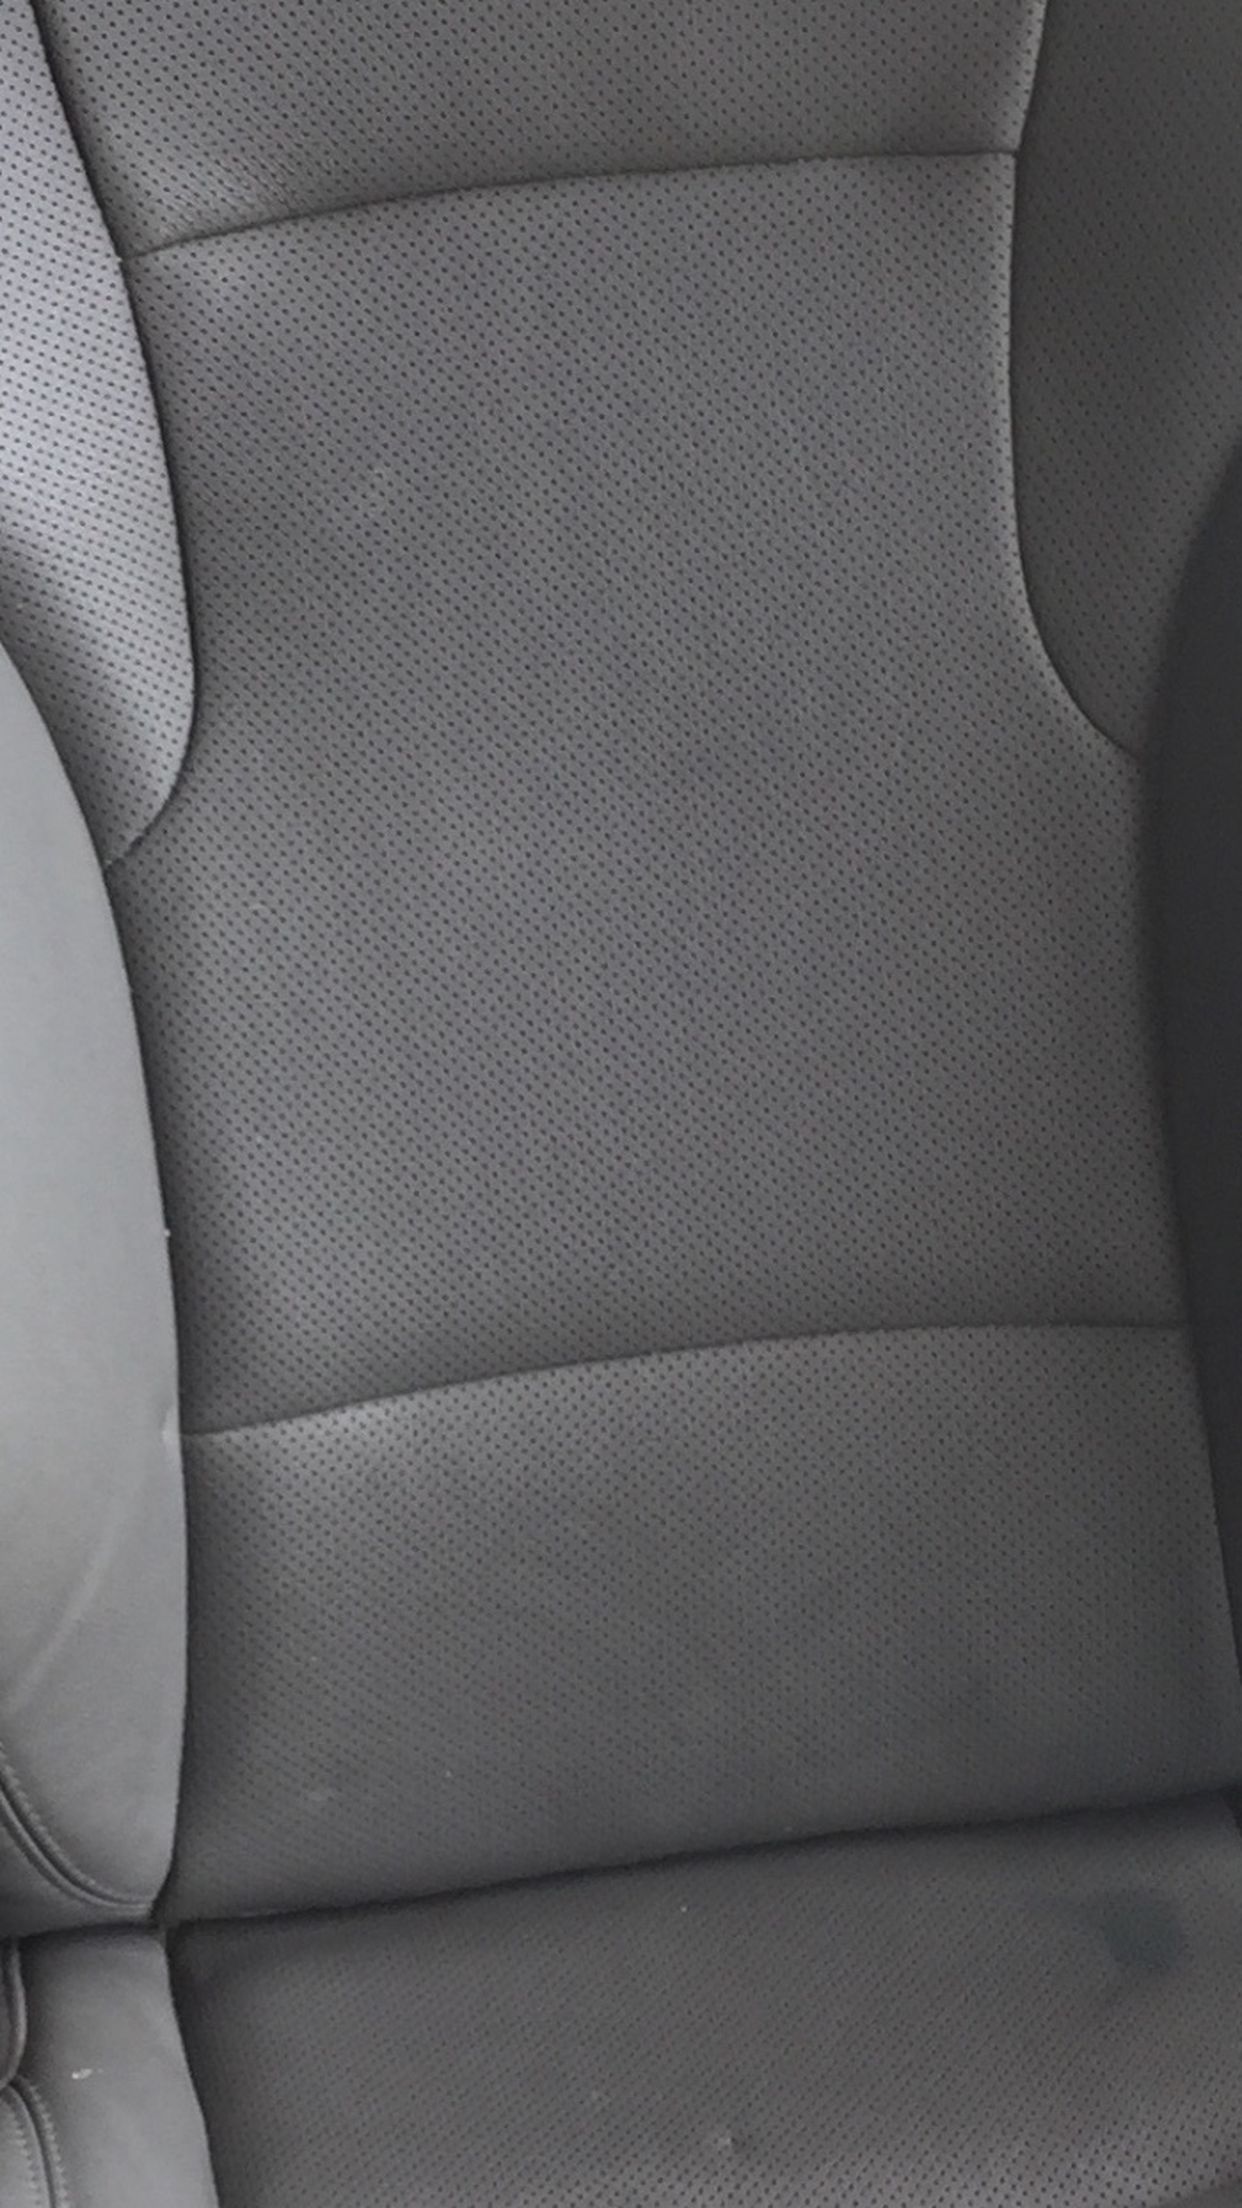 2014 Hyundai Sonata Passenger Seat